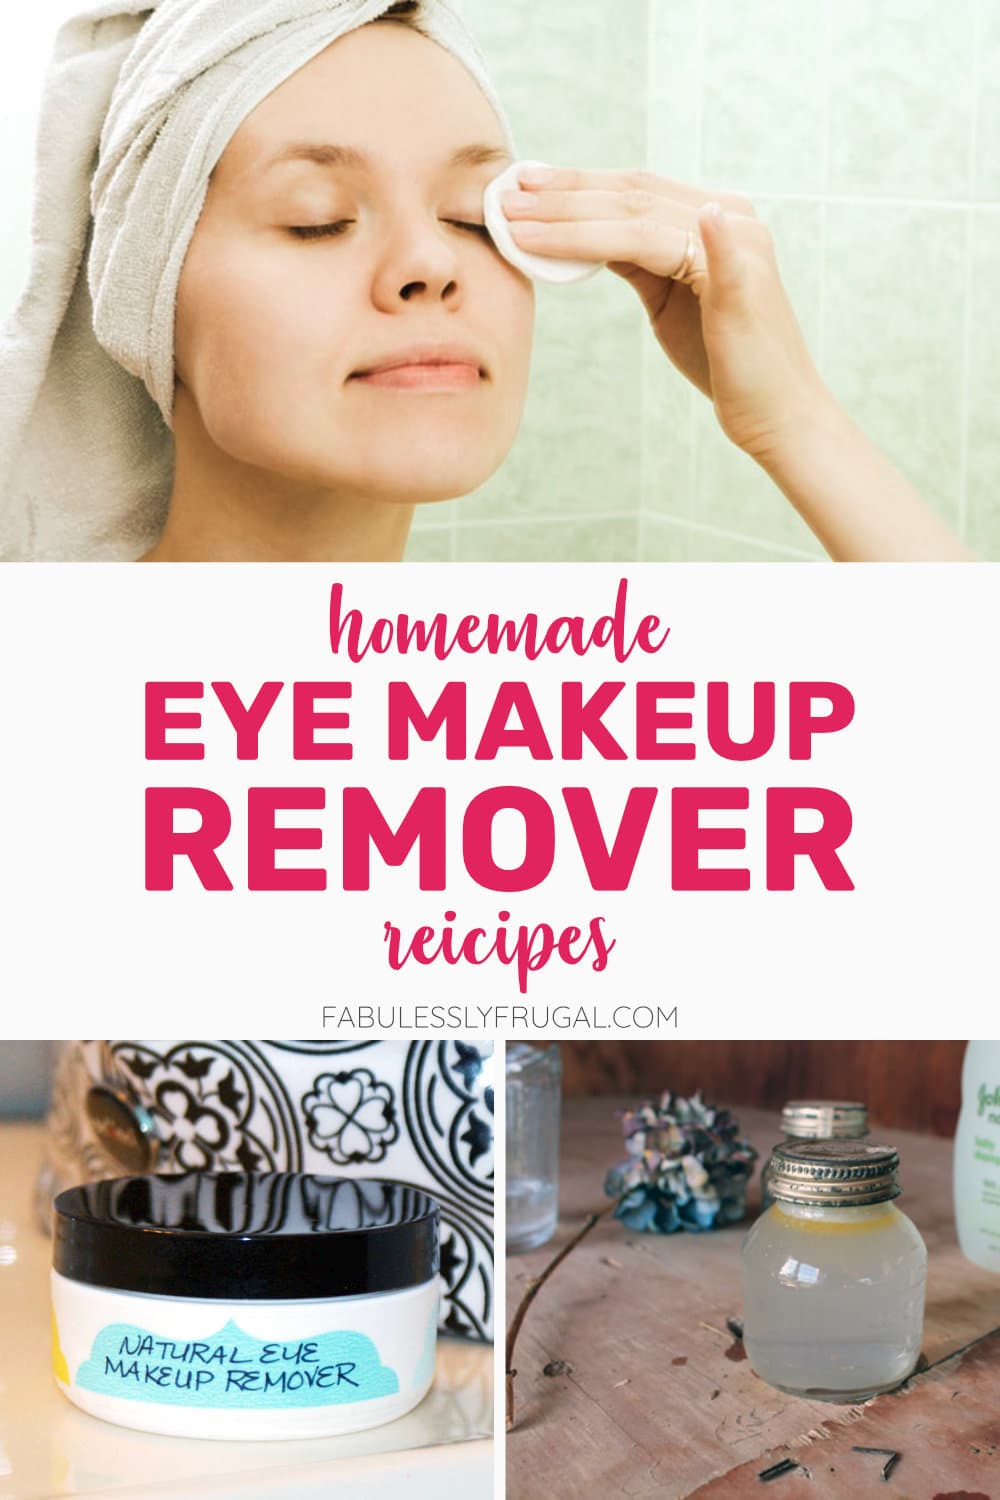 Homemade eye makeup remover recipes